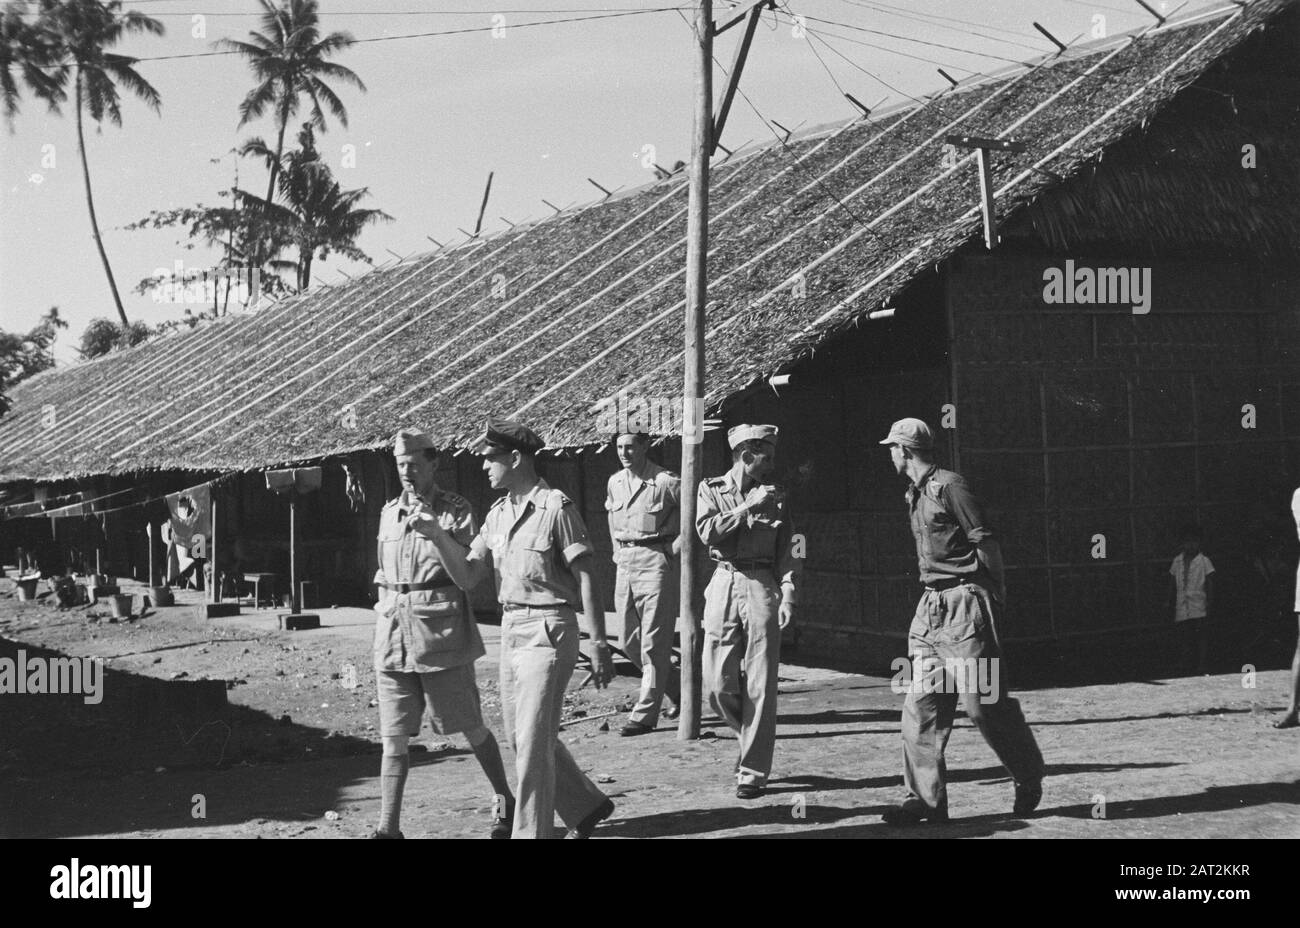 Makassar. Besuch von Premierminister Beel; Truppenverlagerung; Hadjizwaard; Major-General Sas Major General B. Sas besucht Makassar während seiner Durchreise in die Vereinigten Staaten. Datum: 12.Dezember 1947 Ort: Indonesien, Niederländische Ostindien Stockfoto